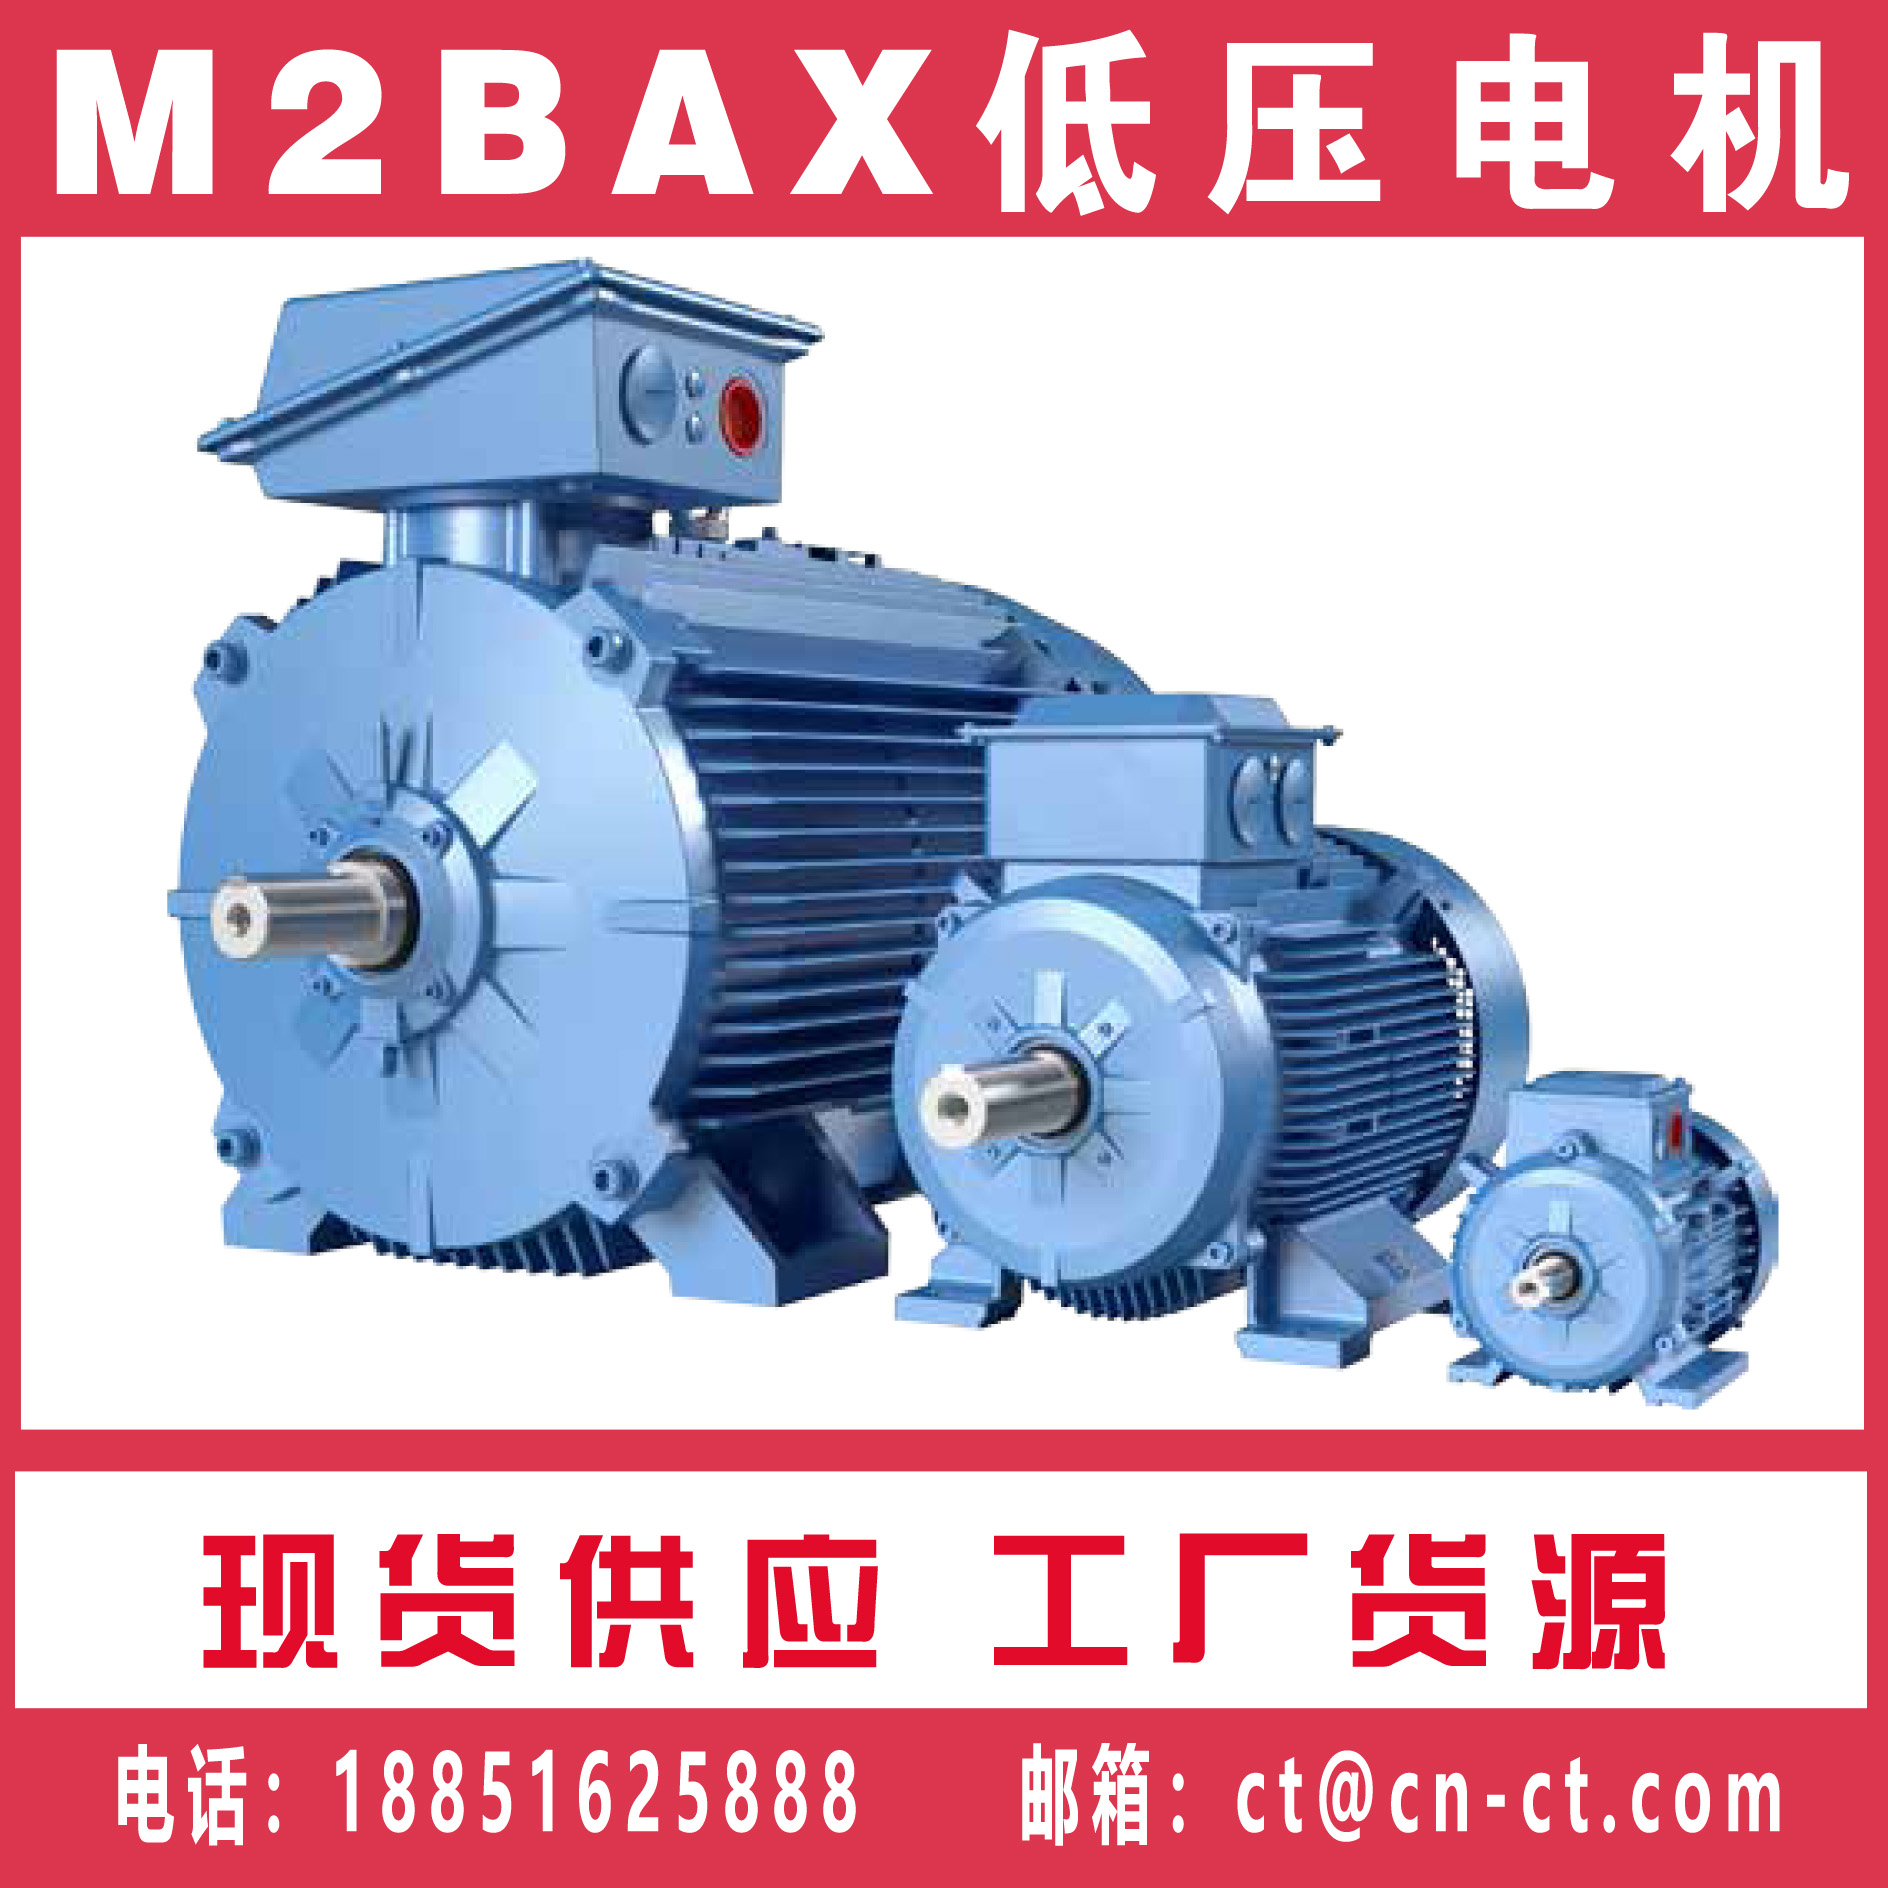 ABB普通电动机型号 M2BAX系列电机